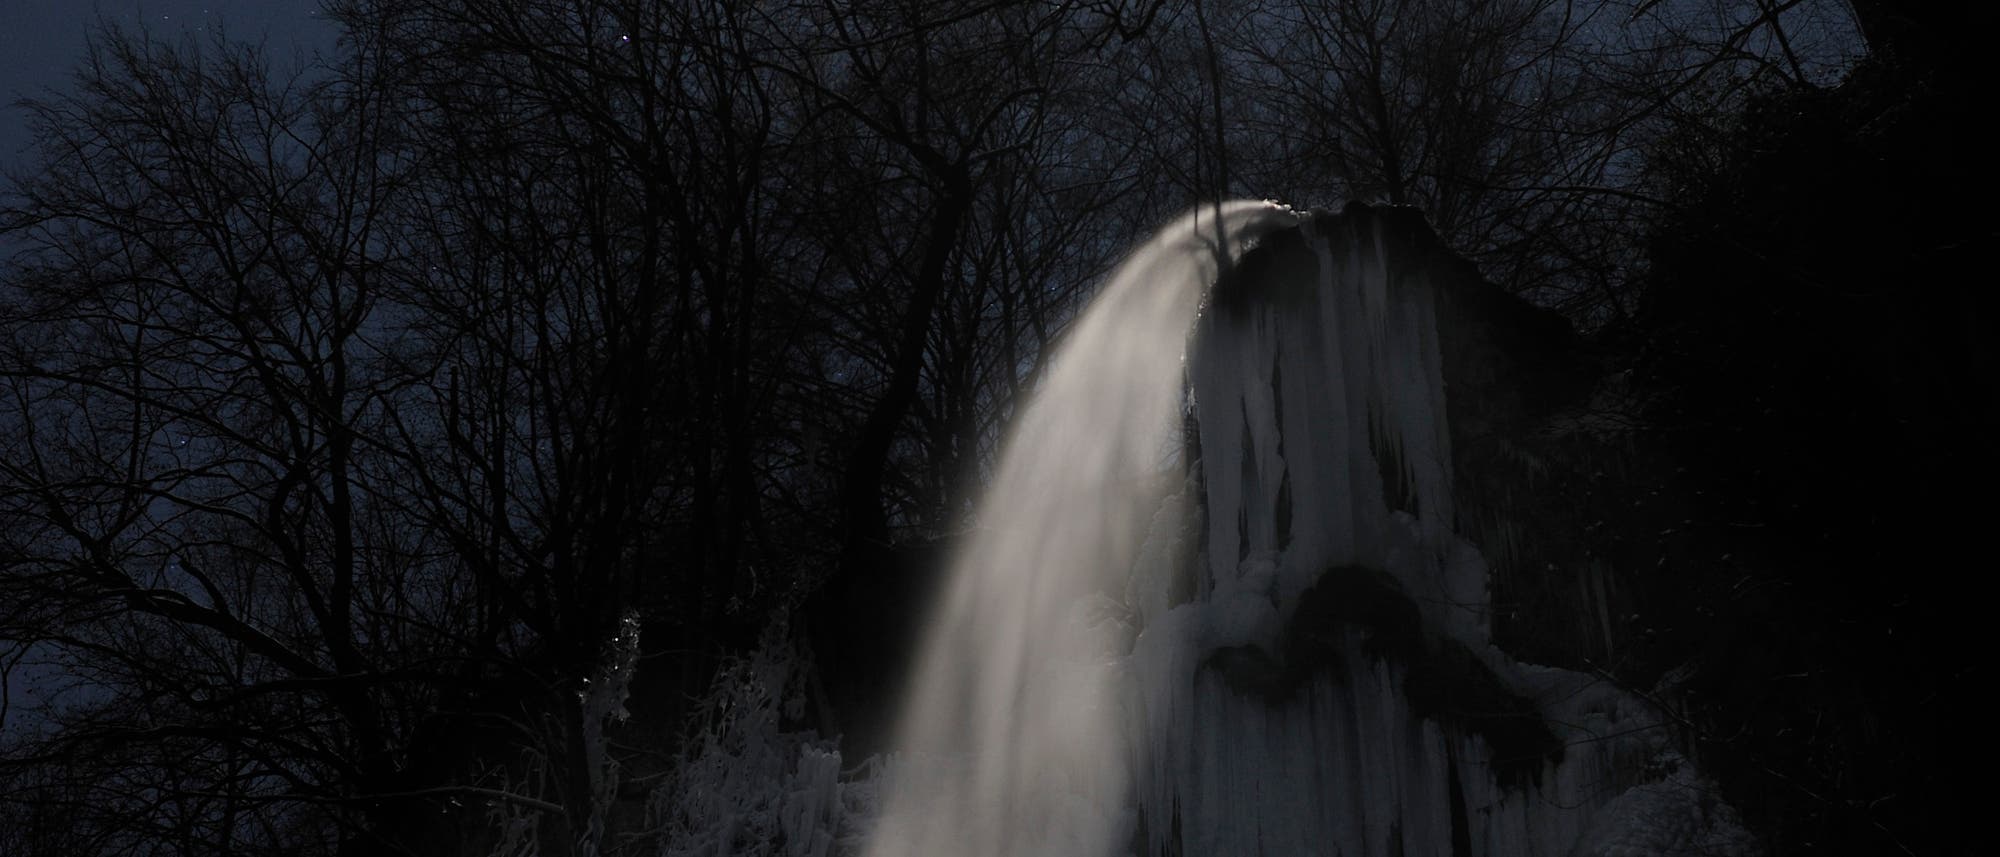 Vollmond über dem Uracher Wasserfall (Langzeitaufnahme)